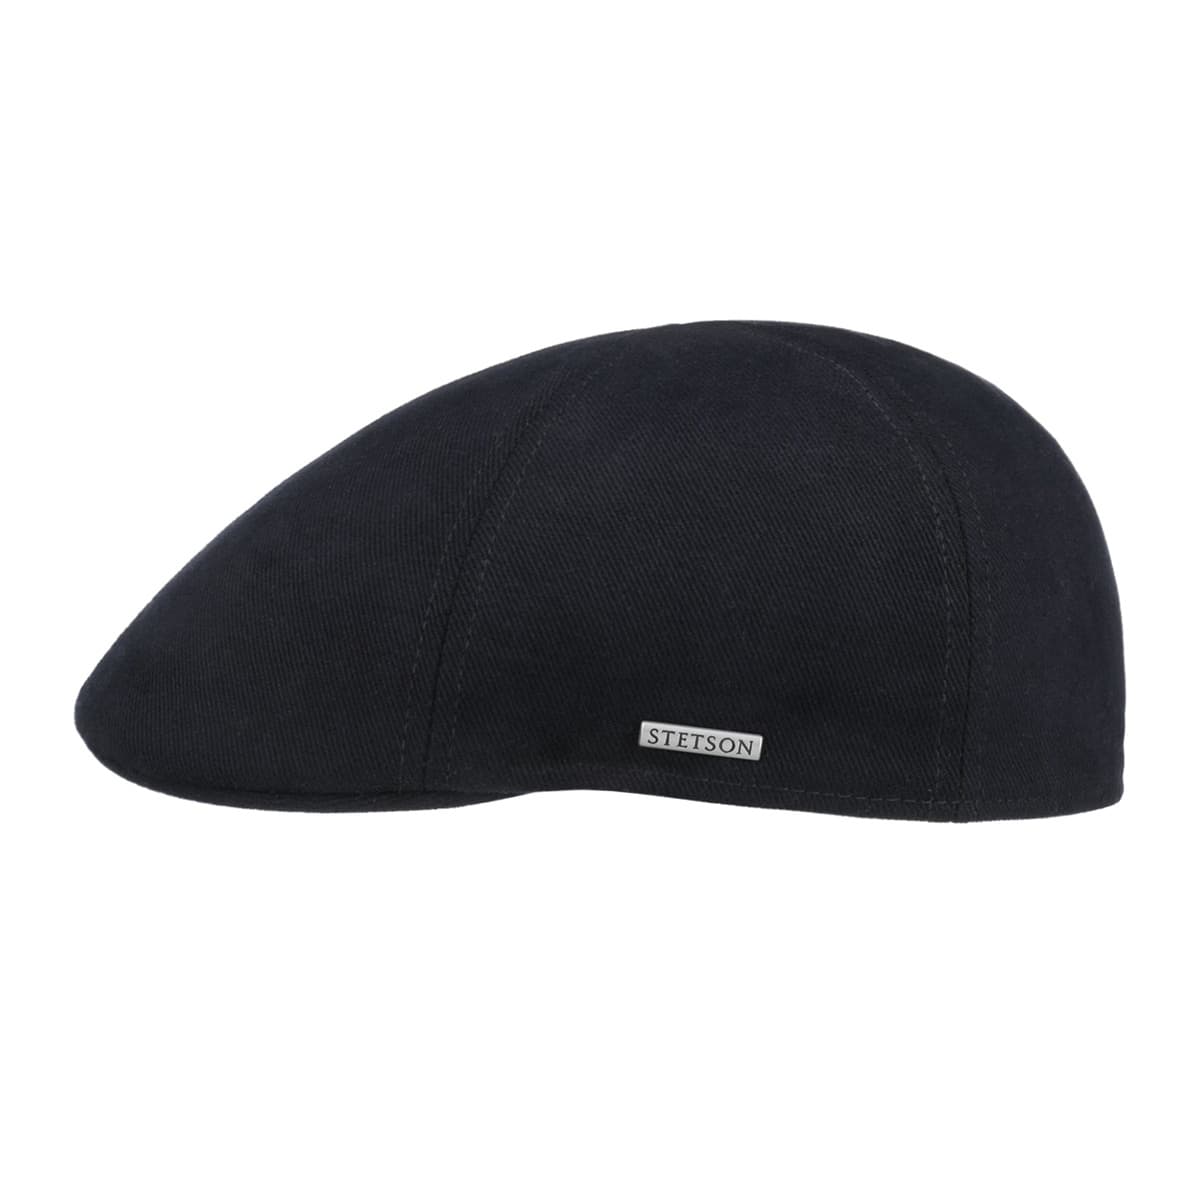 Onderdrukking daar ben ik het mee eens Interpretatief STETSON | Flat cap Texas Soft 100% cotton --> Online Hatshop for hats,  caps, headbands, gloves and scarfs